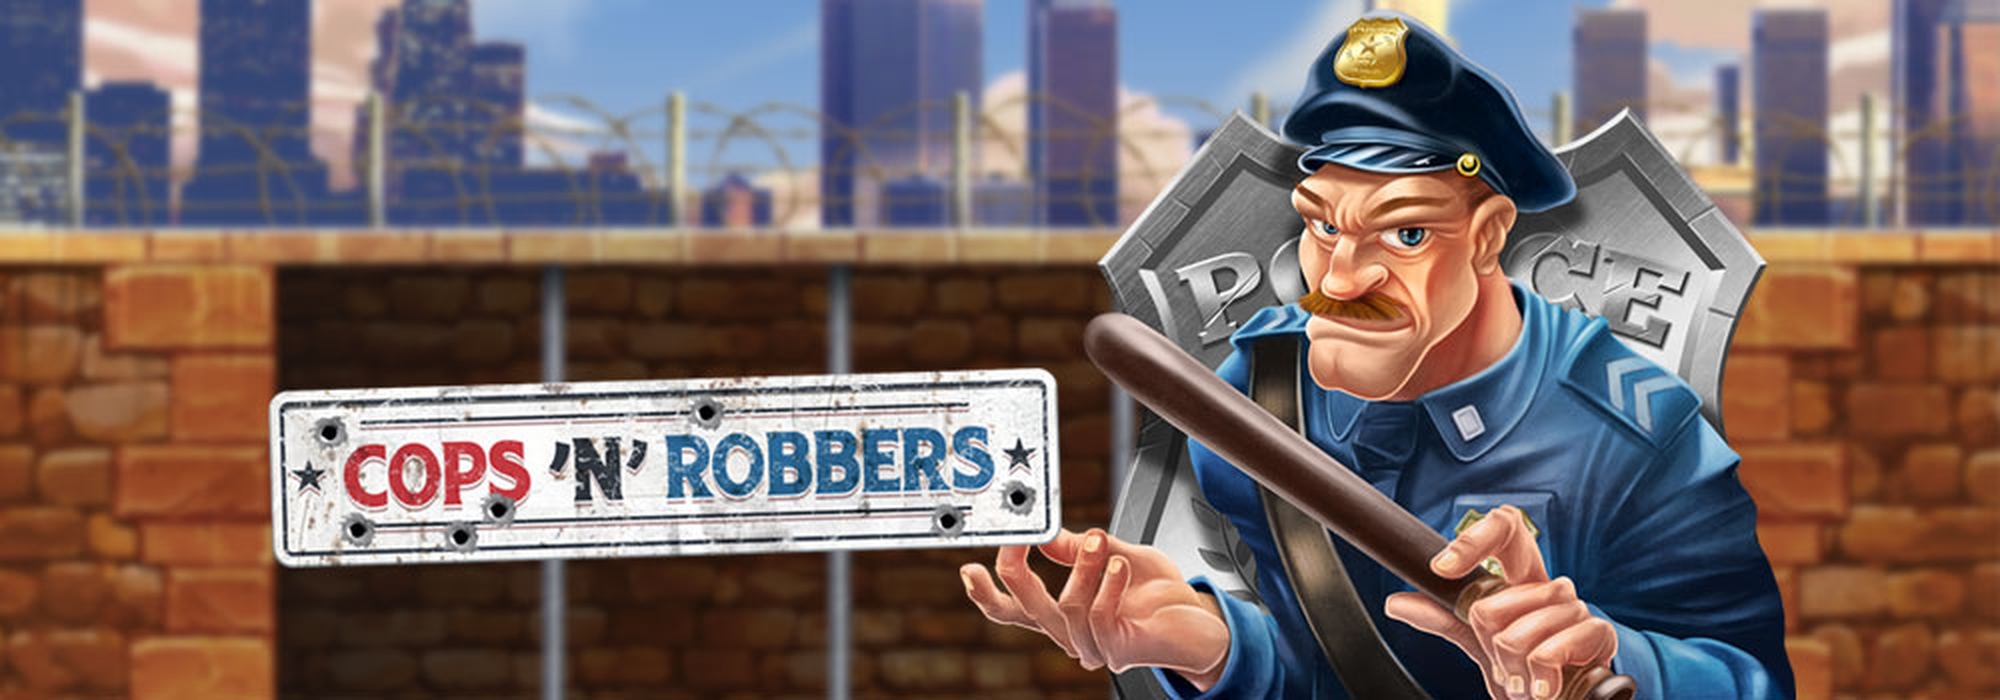 Cops 'N' Robbers 2018 demo